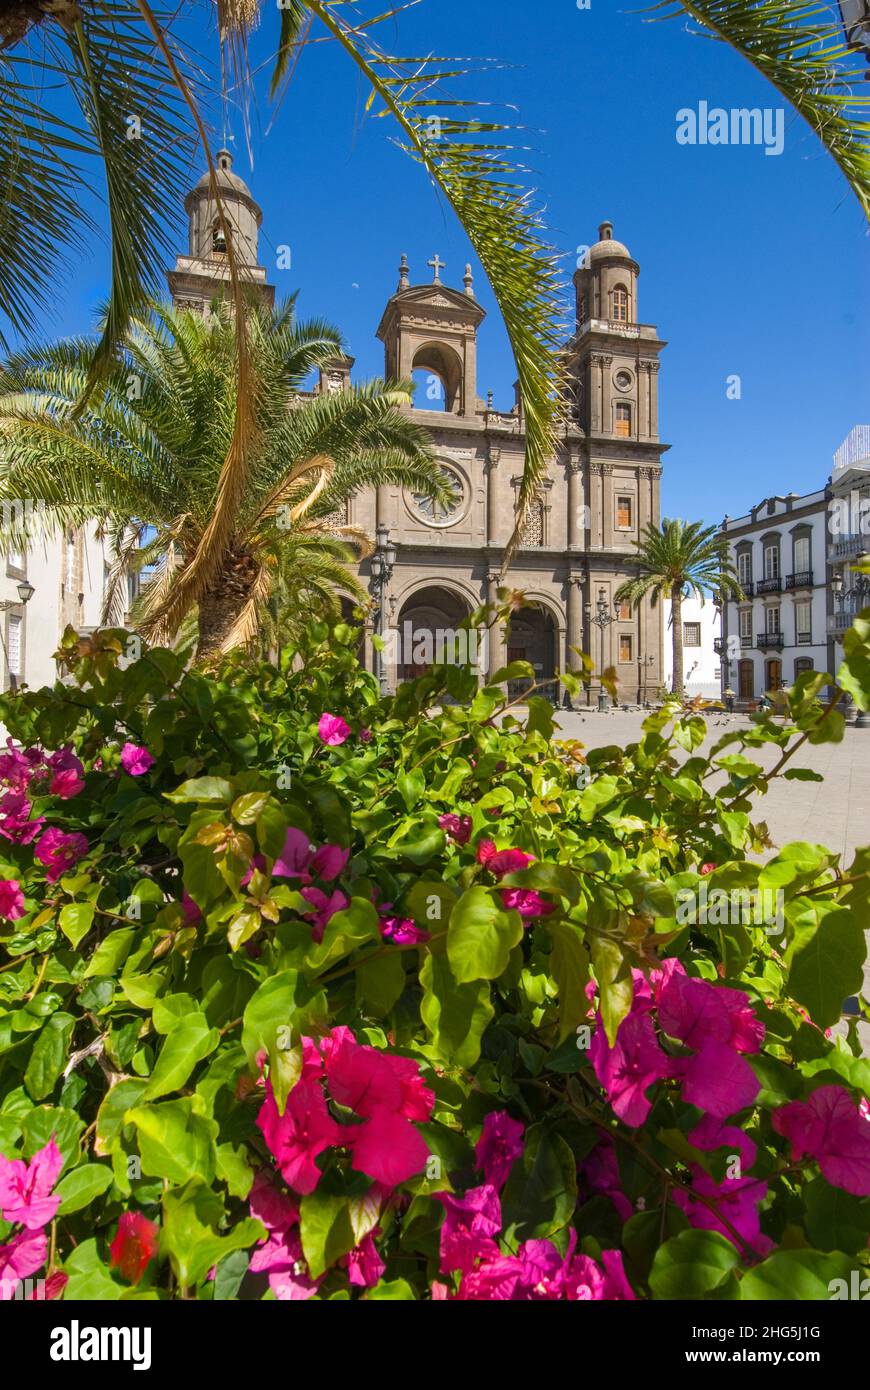 ALTE KATHEDRALE VON LAS PALMAS Santa Ana eingerahmt von Palmen auf dem historischen platz mit Hibiskusblüten im Vordergrund Vegueta Las Palmas de Gran Canaria Kanarische Inseln Spanien Stockfoto